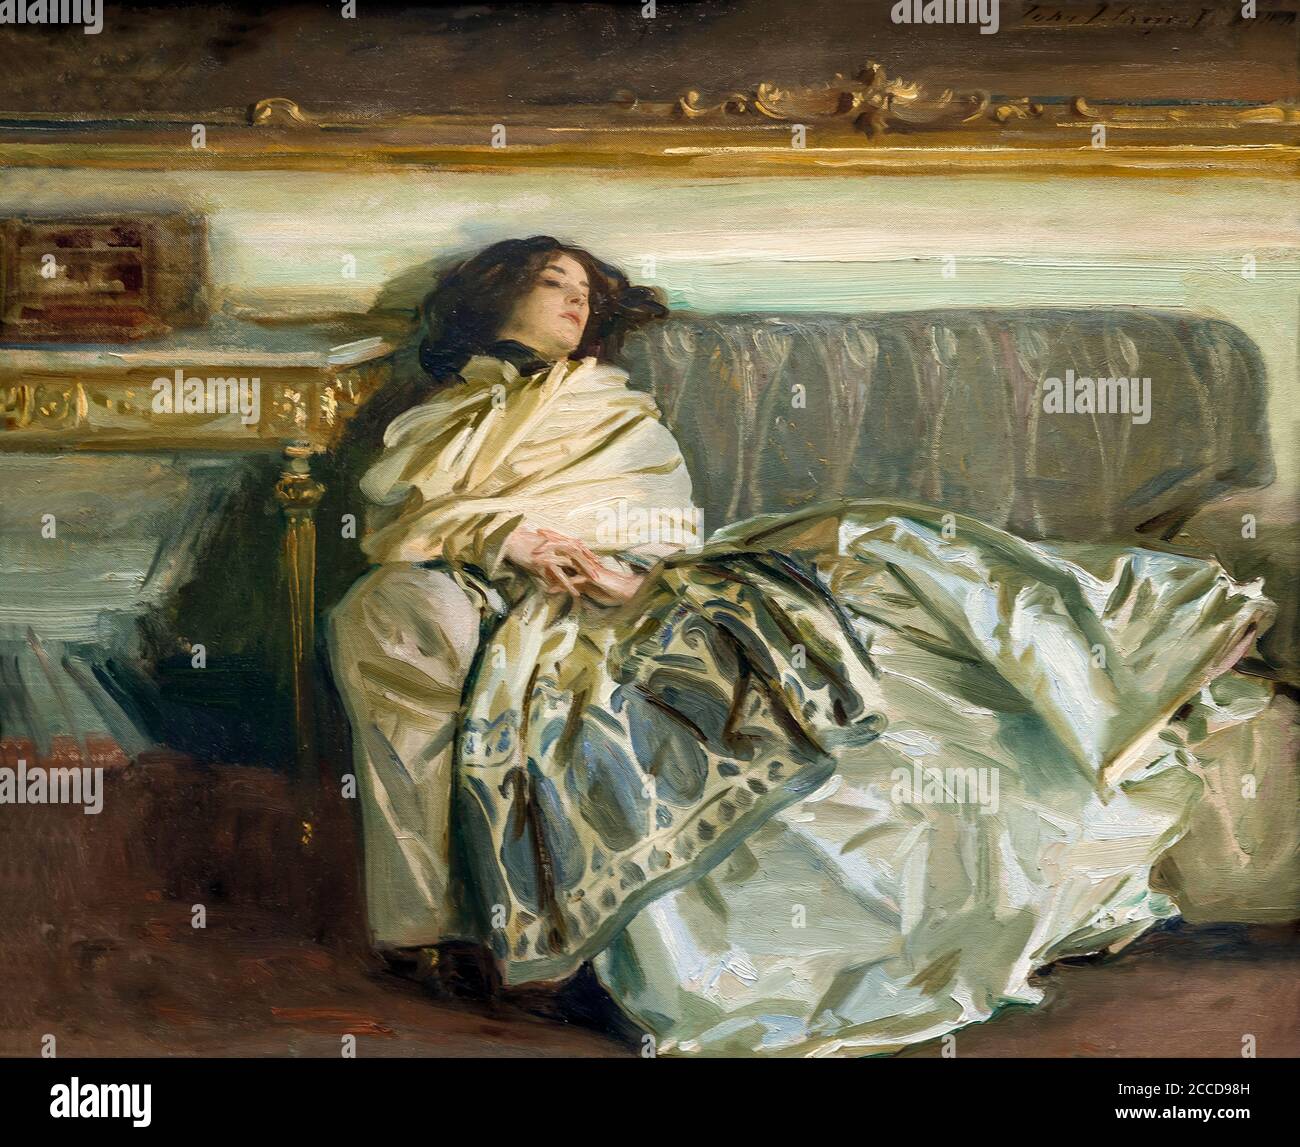 Nonchaloir (Repose), John Singer Sargent, 1911, National Gallery of Art, Washington DC, Etats-Unis, Amérique du Nord Banque D'Images